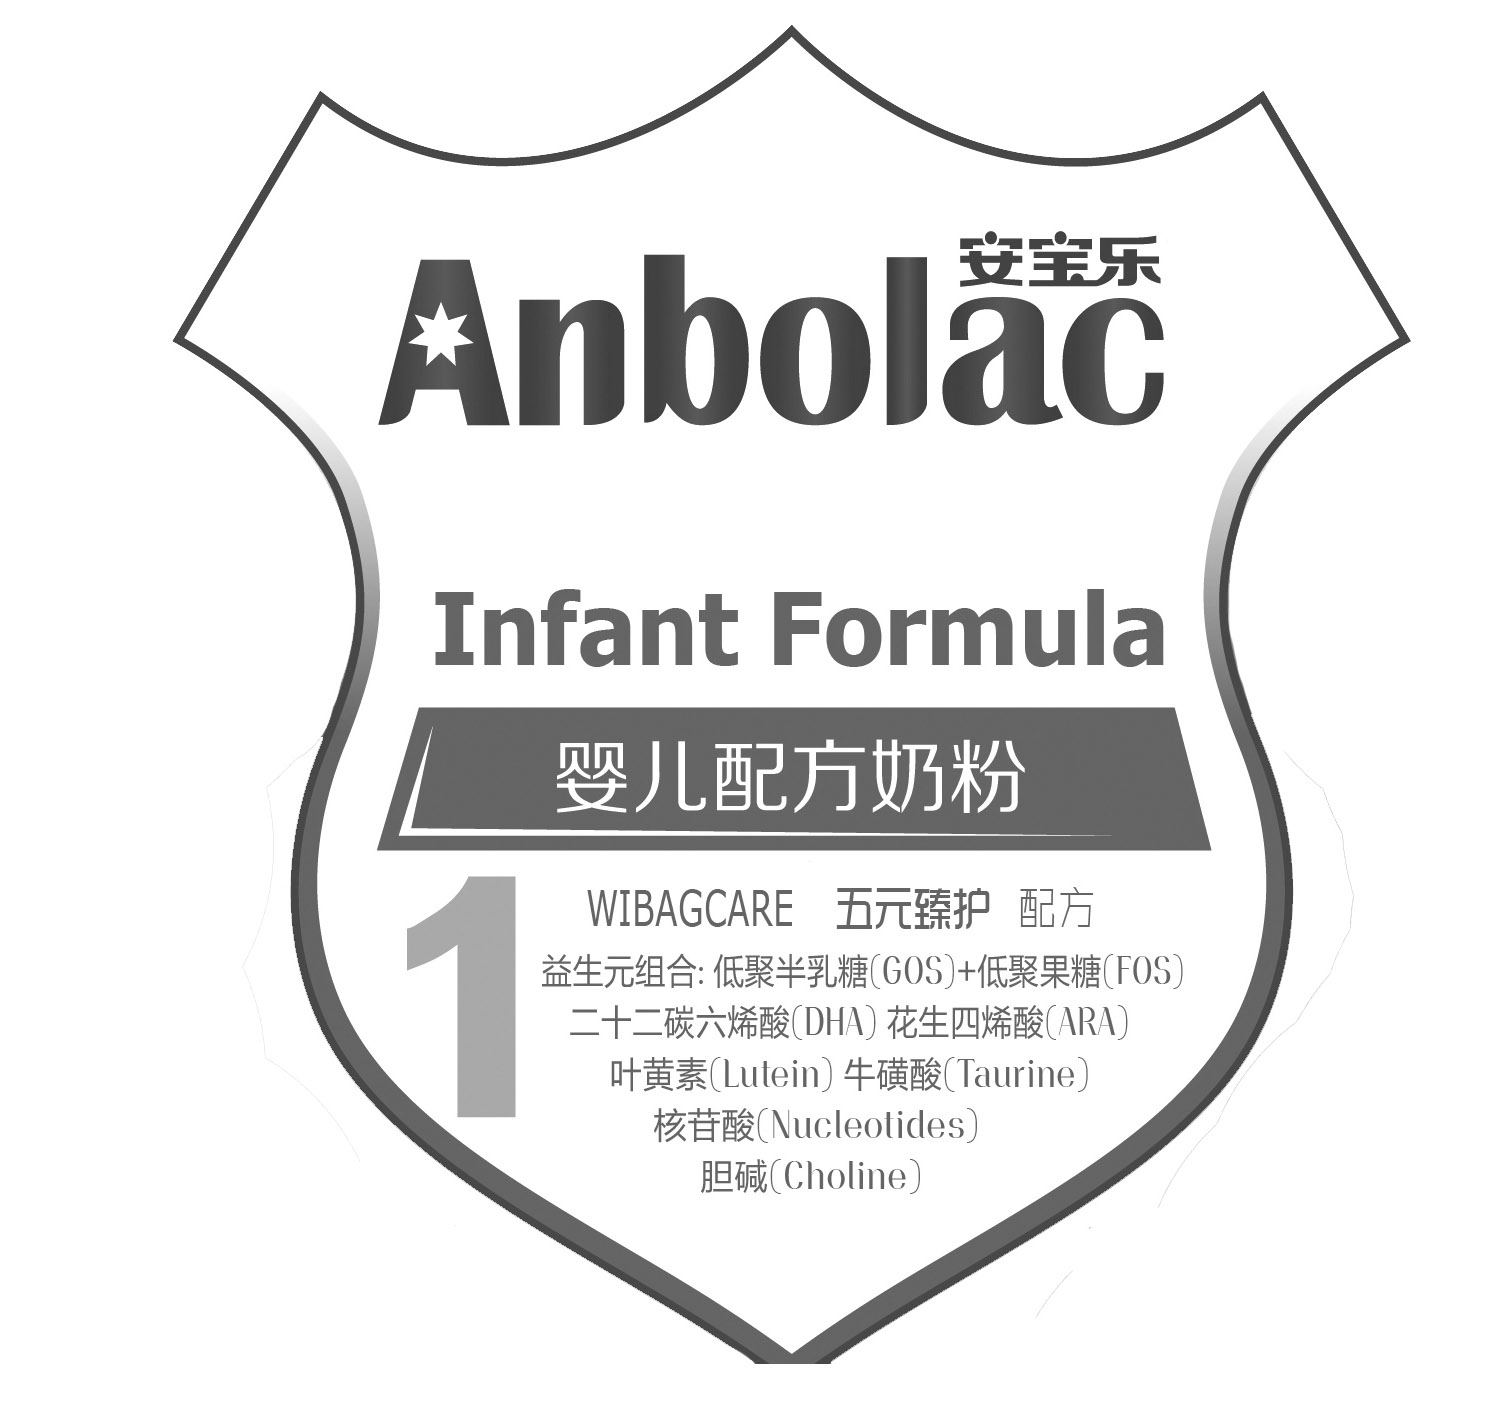  em>安宝乐 /em>  em>anbolac /em>  em>infant /em>  em>formula /em